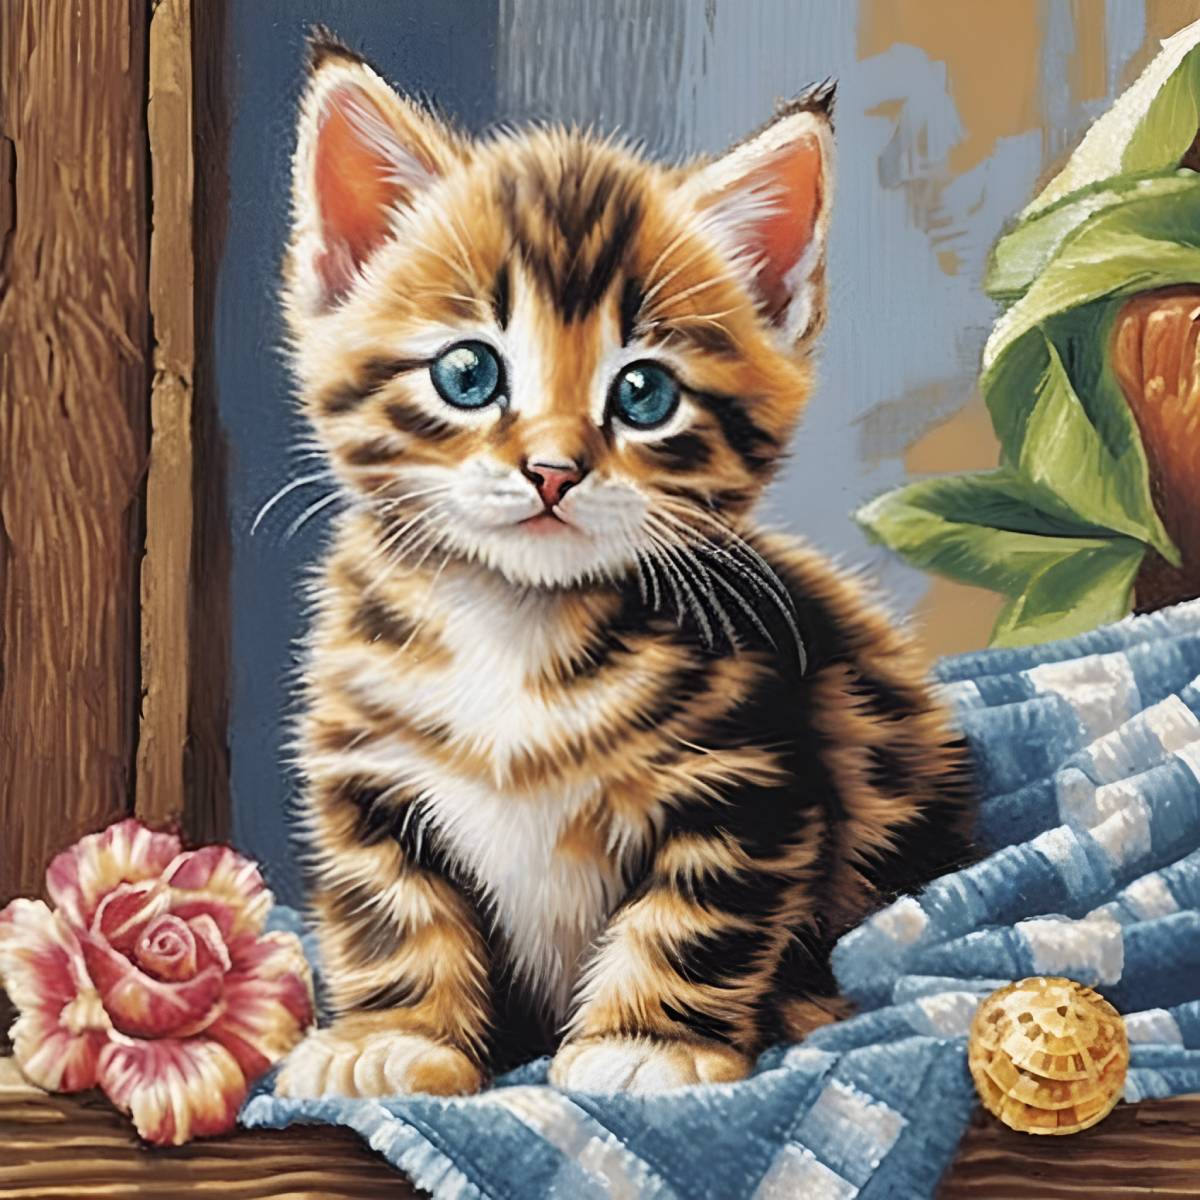 diamants-wizard-diamond-painting-kits-Animaux-Cat-Precious-Tabby-Kitten-original.jpg